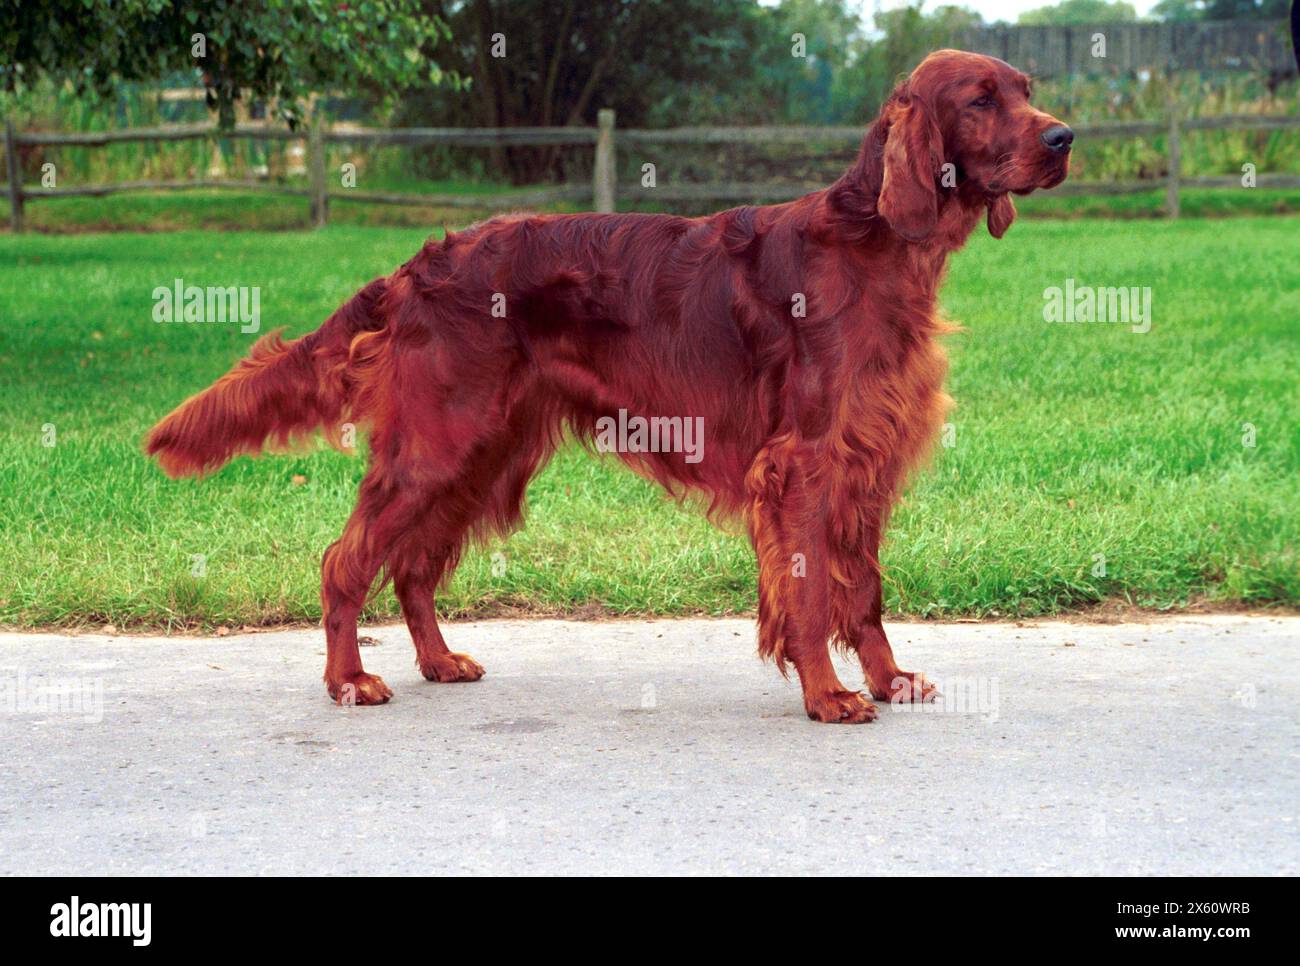 Adult Red Irish Setter Dog stood Outdoors Stock Photo